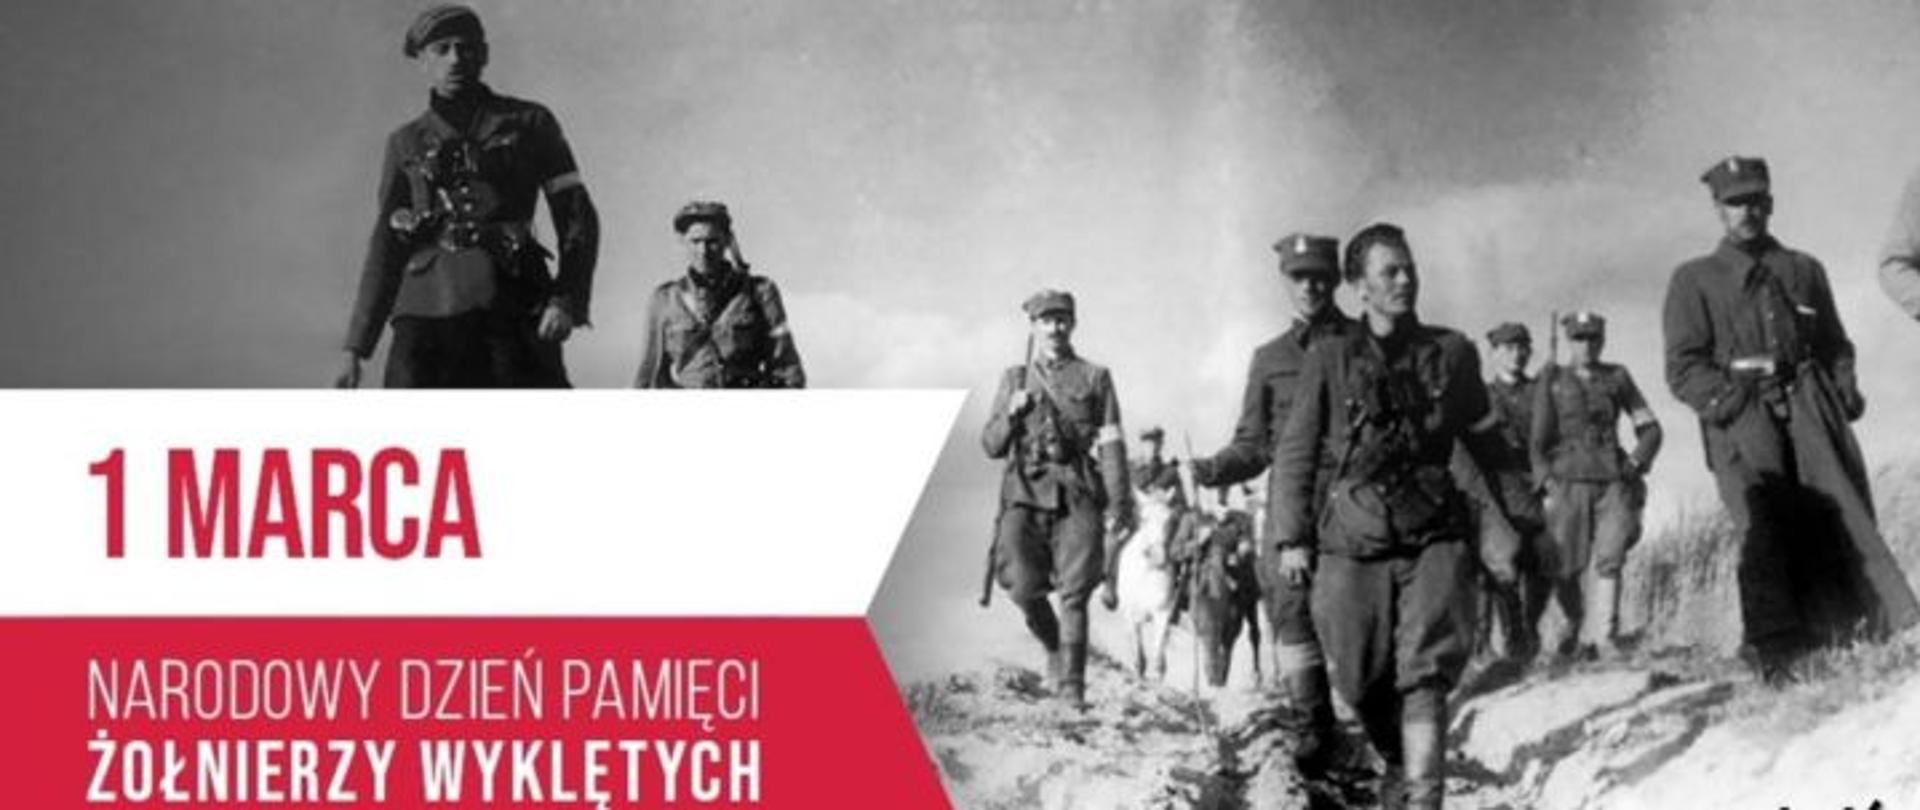 Czarno-biały plakat przedstawiający Żołnierzy Wyklętych oraz flagę Polski w barwach biało-czerwonych